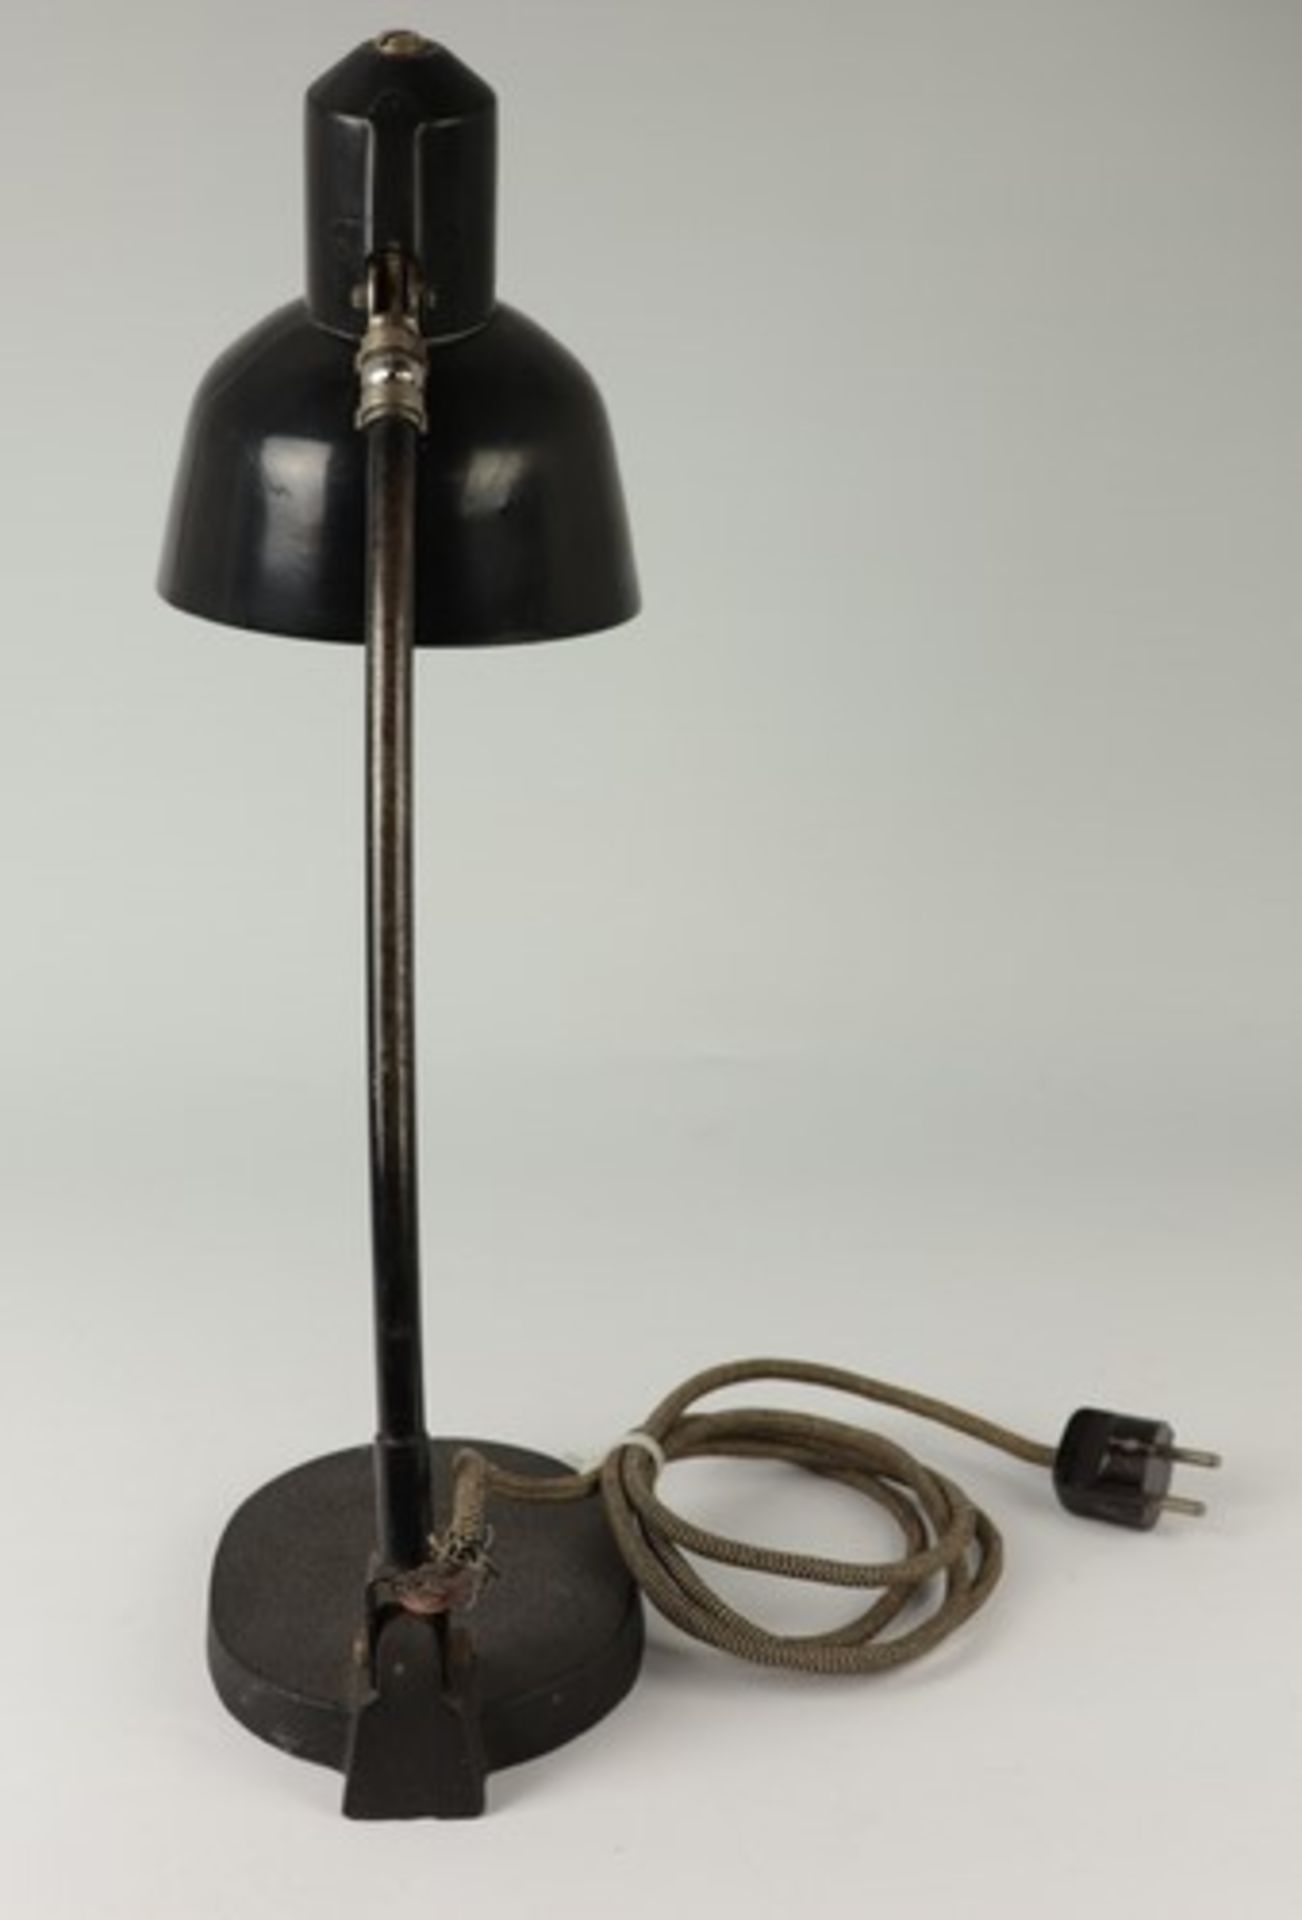 Tischlampe - Art-décoim Schirm bez., Prägemarke SIS, um 1920, Werkstattlampe/Gelenklampe - Bild 2 aus 6